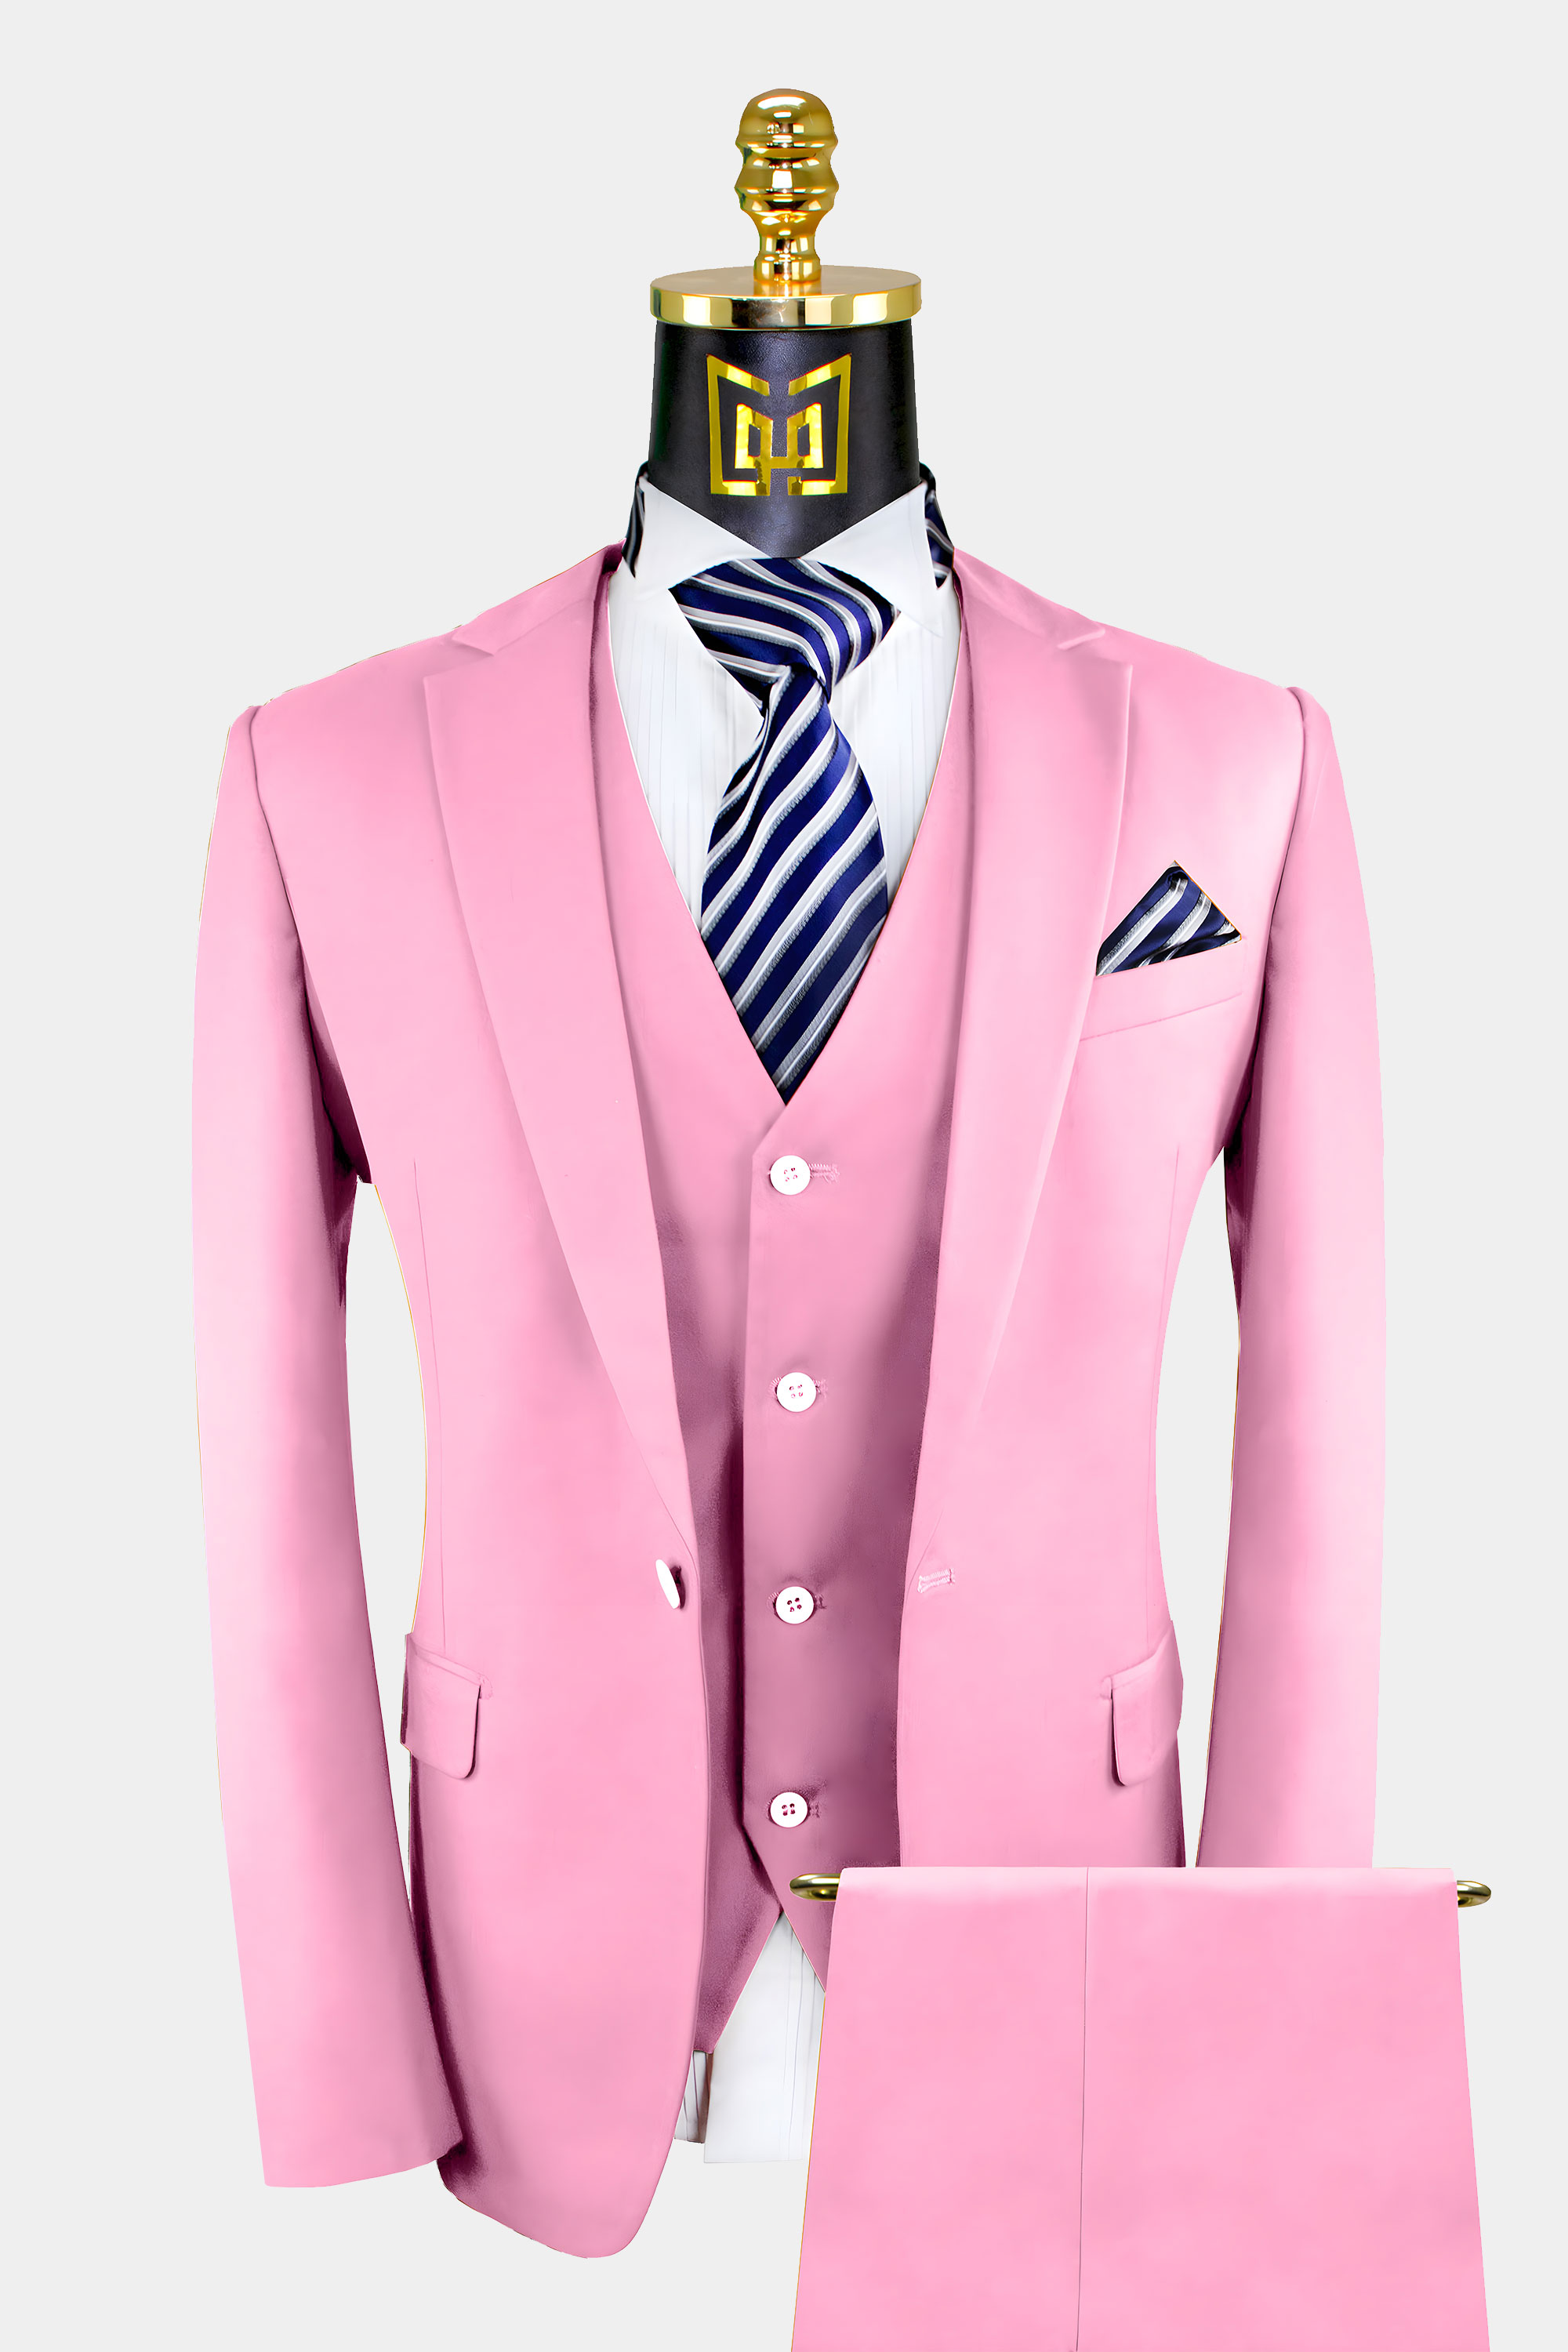 Light Pink Suit - 3 Piece | Gentleman's Guru